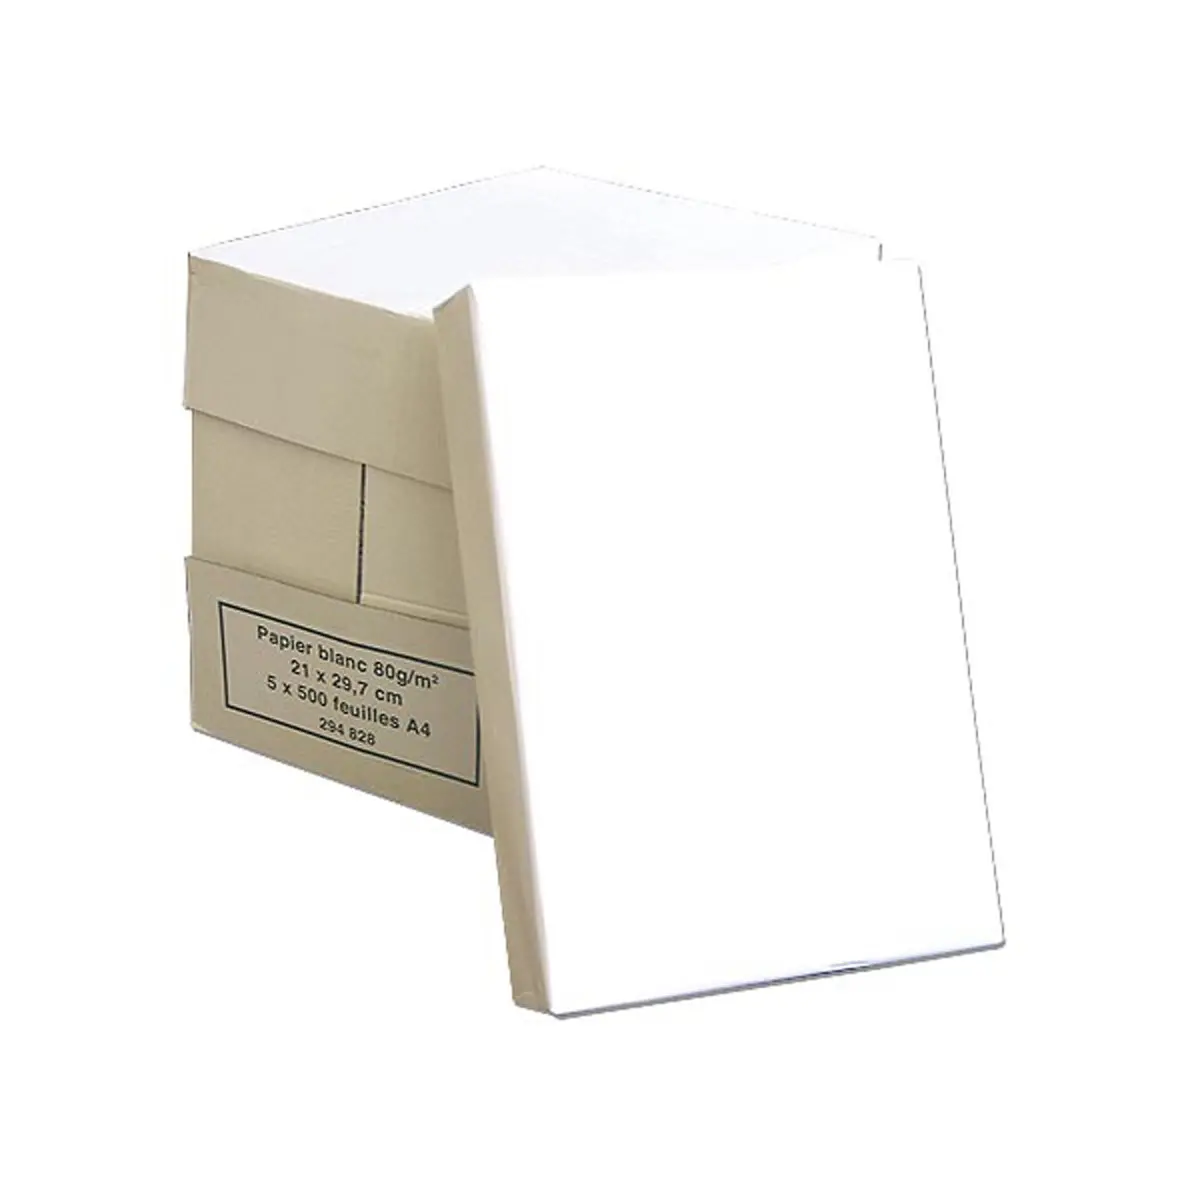 Bureau Vallée Recyclé - Papier blanc - A4 (210 x 297 mm) - 80 g/m² - 2500  feuilles (carton de 5 ramettes) Pas Cher | Bureau Vallée